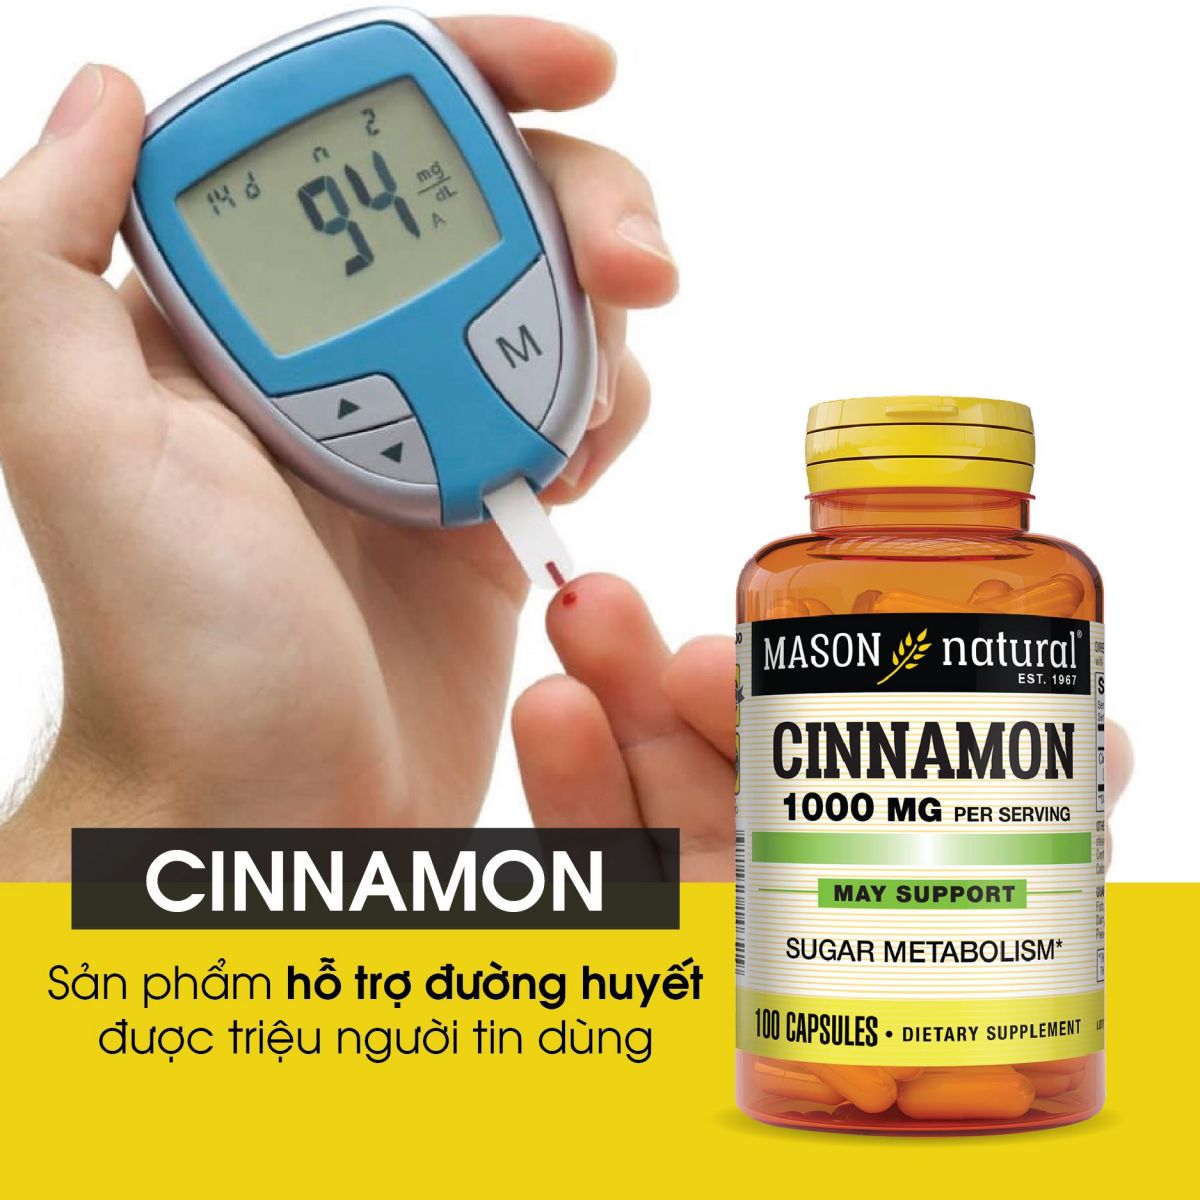 Sử dụng sản phẩm Cinnamon 1000mg để hỗ trợ điều trị tiểu đường đồng thời ngăn ngừa được các biến chứng